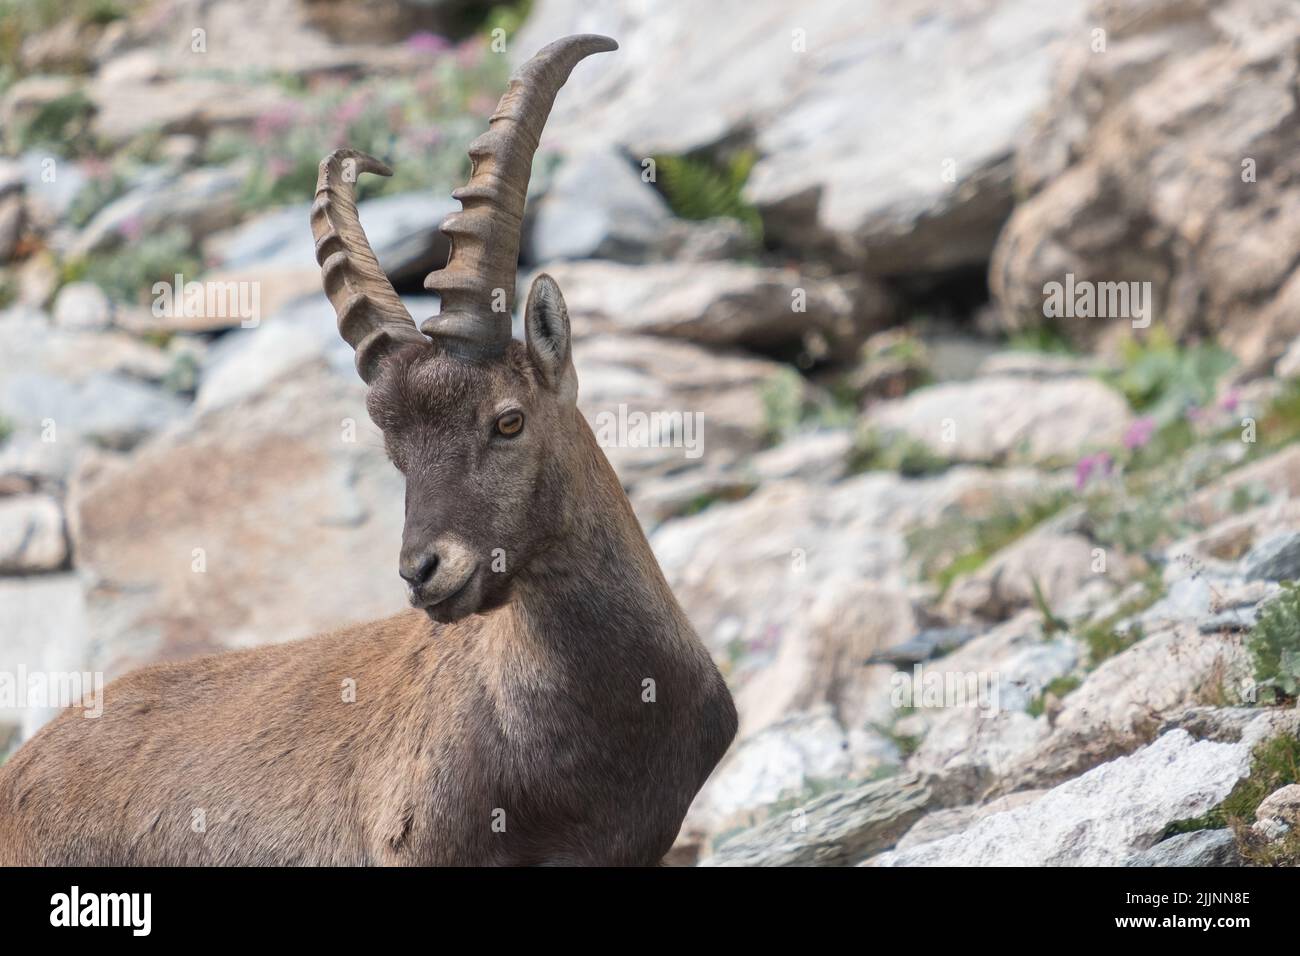 Capra stambecco marrone con corna lunghe e affilate sulla collina rocciosa Foto Stock